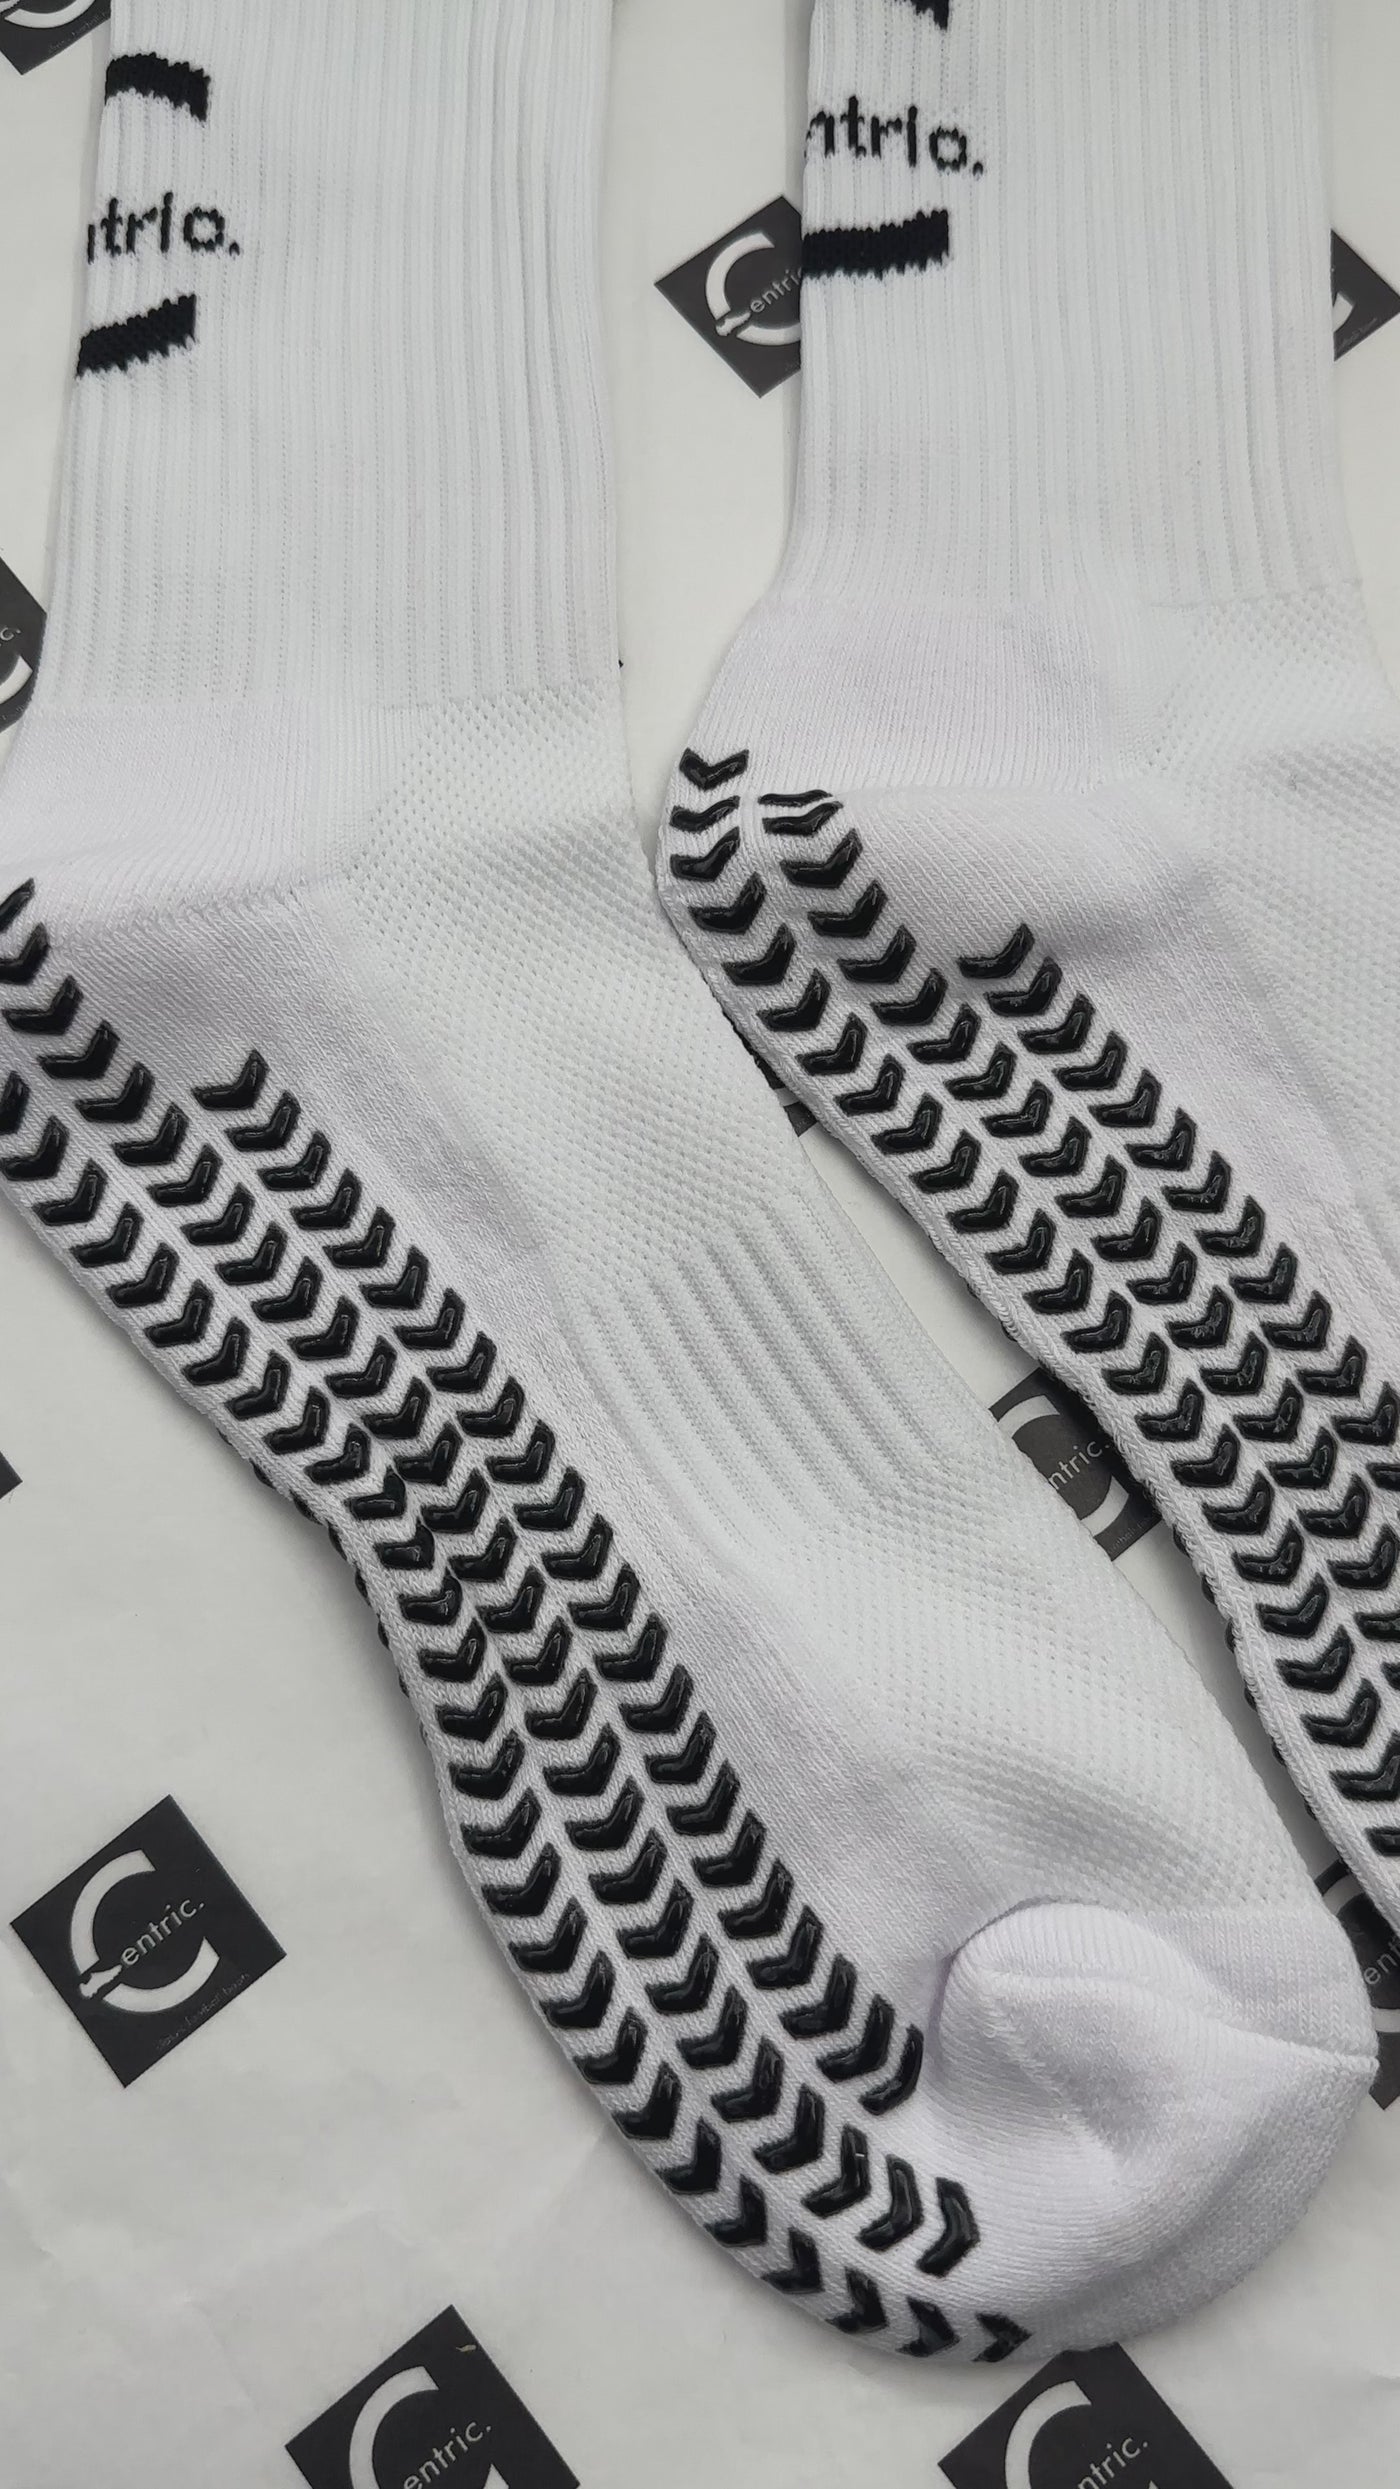 Bootscentric White Grip Socks